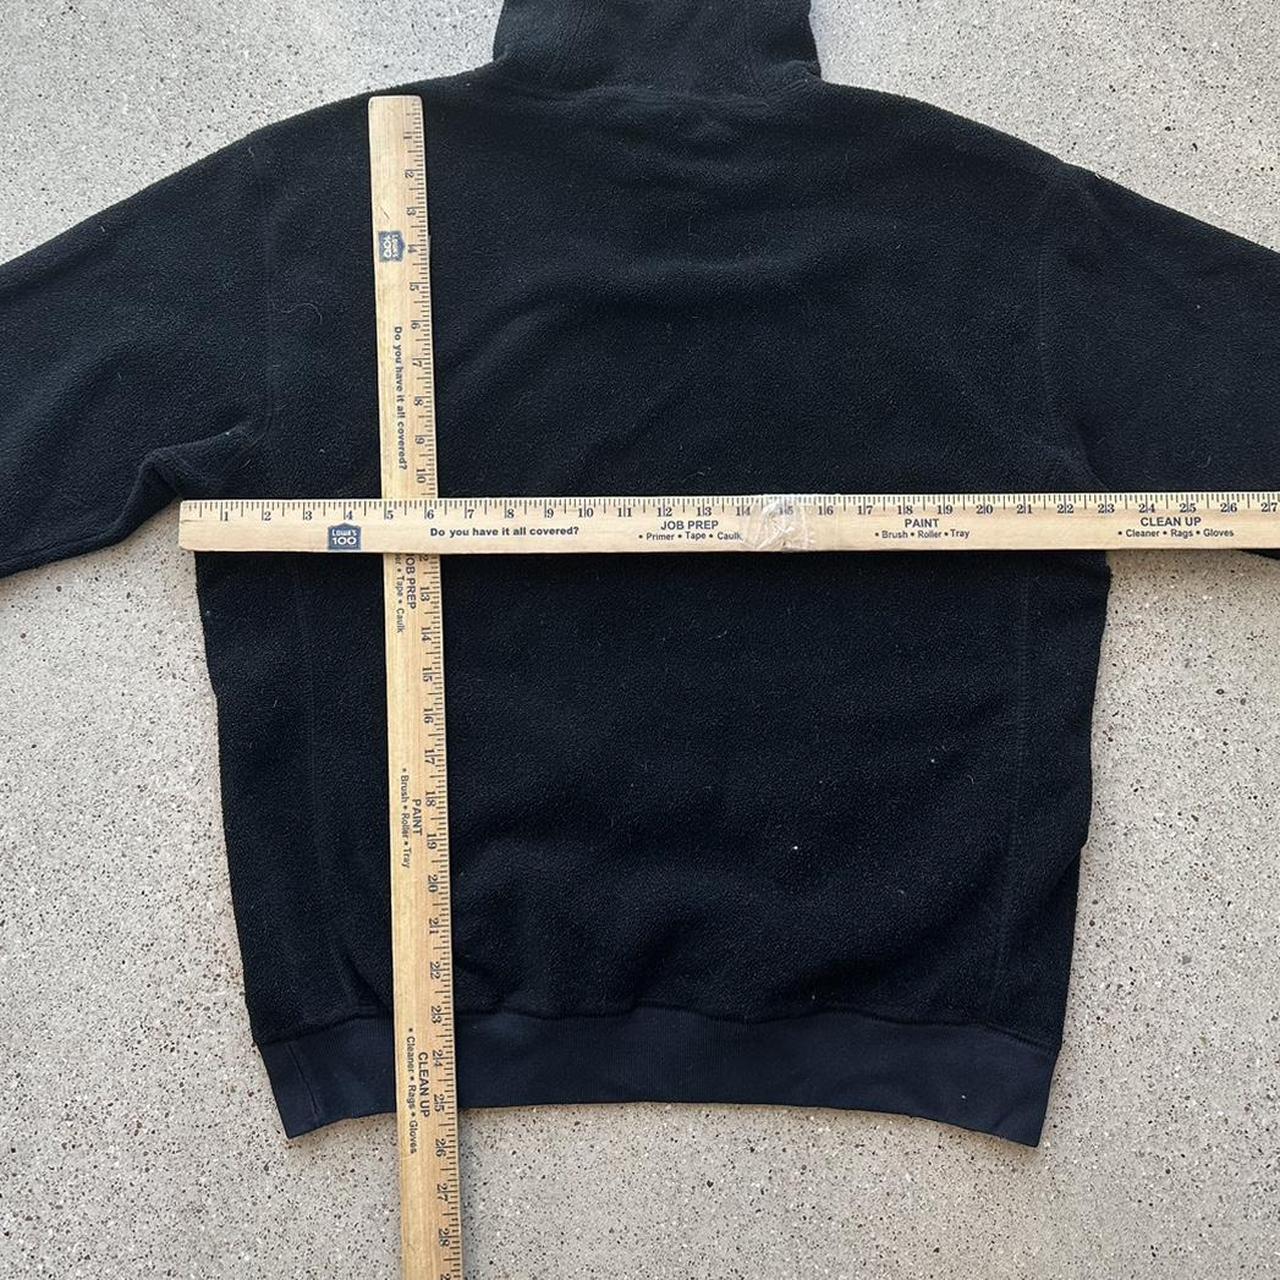 Vintage Gap Athletic fleece hoodie 🤠 FREE shipping... - Depop